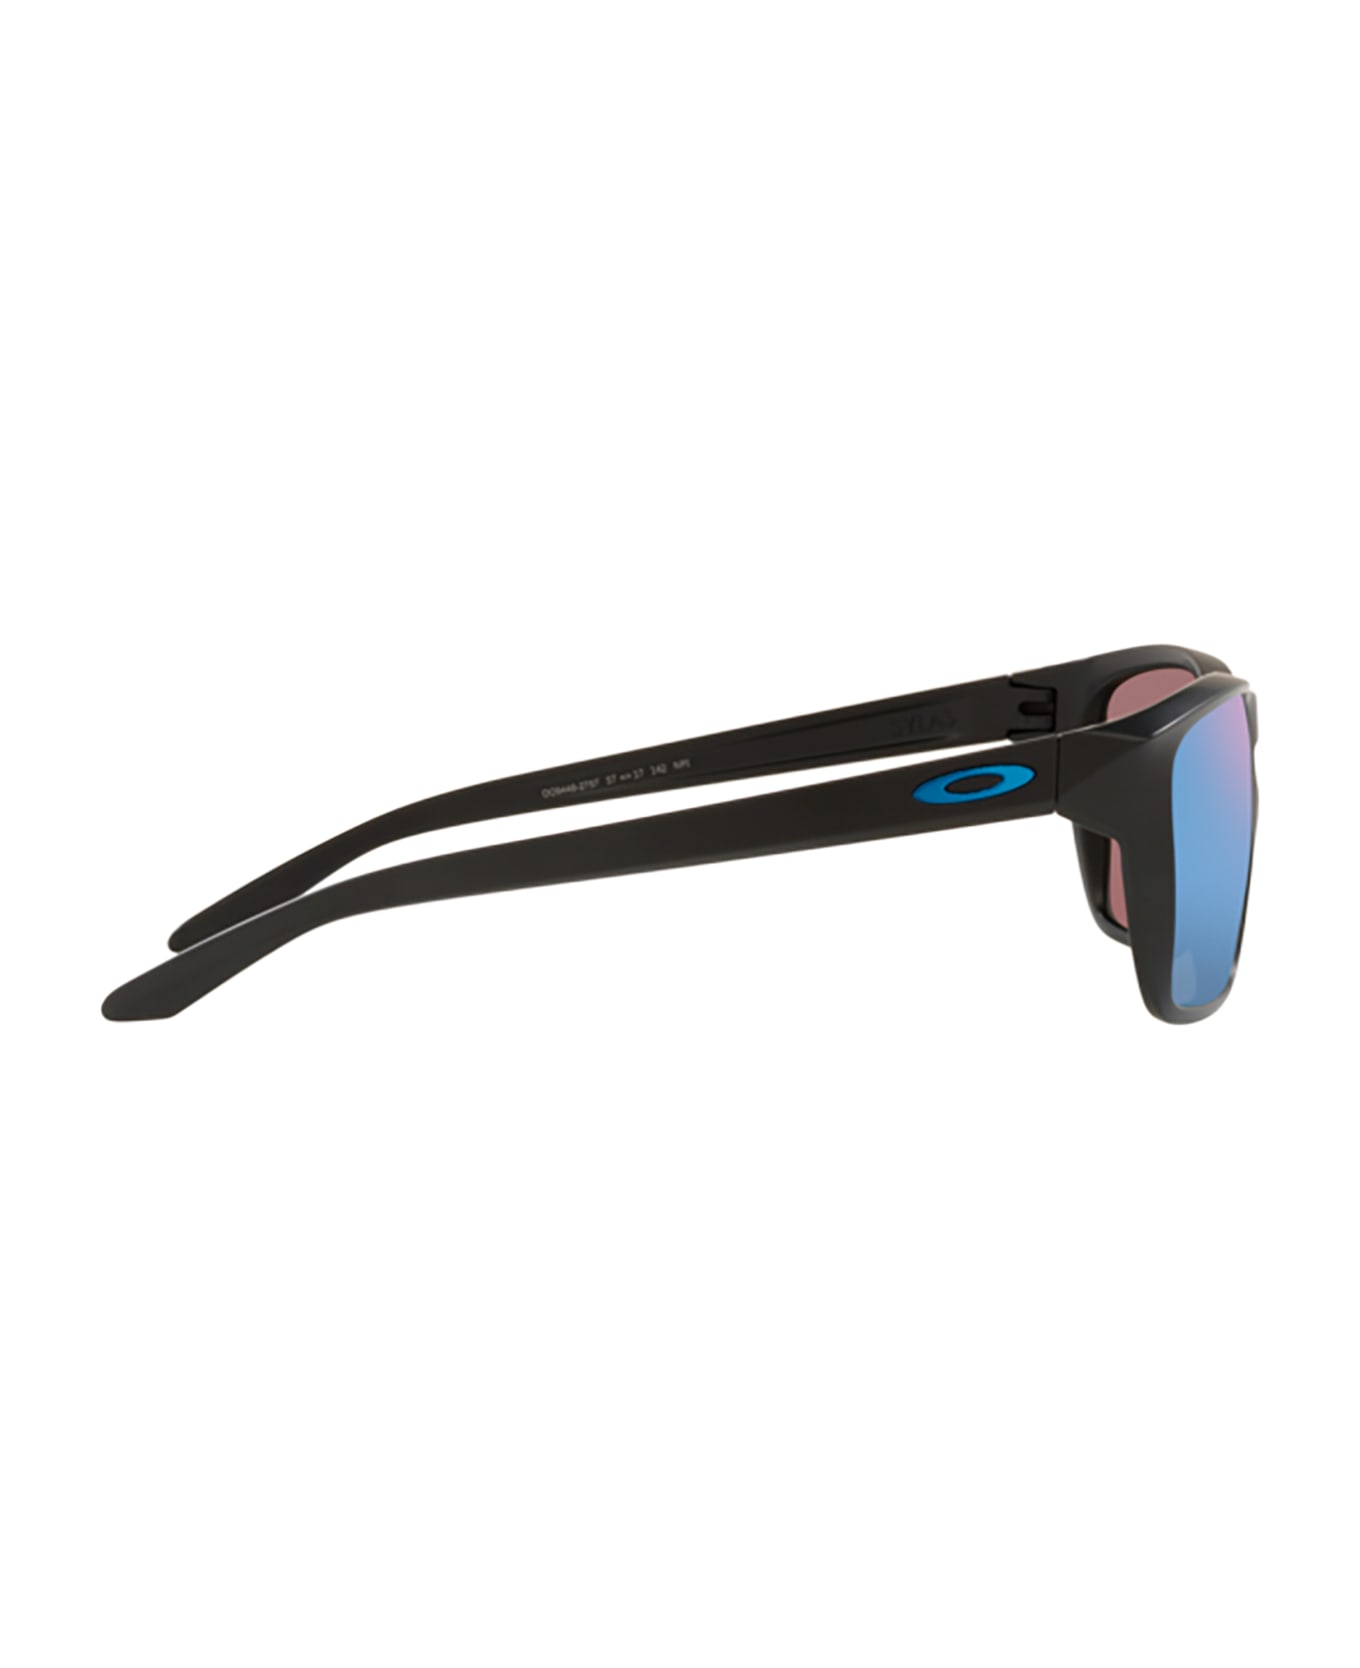 Oakley Oo9448 Matte Black Sunglasses - Matte black サングラス